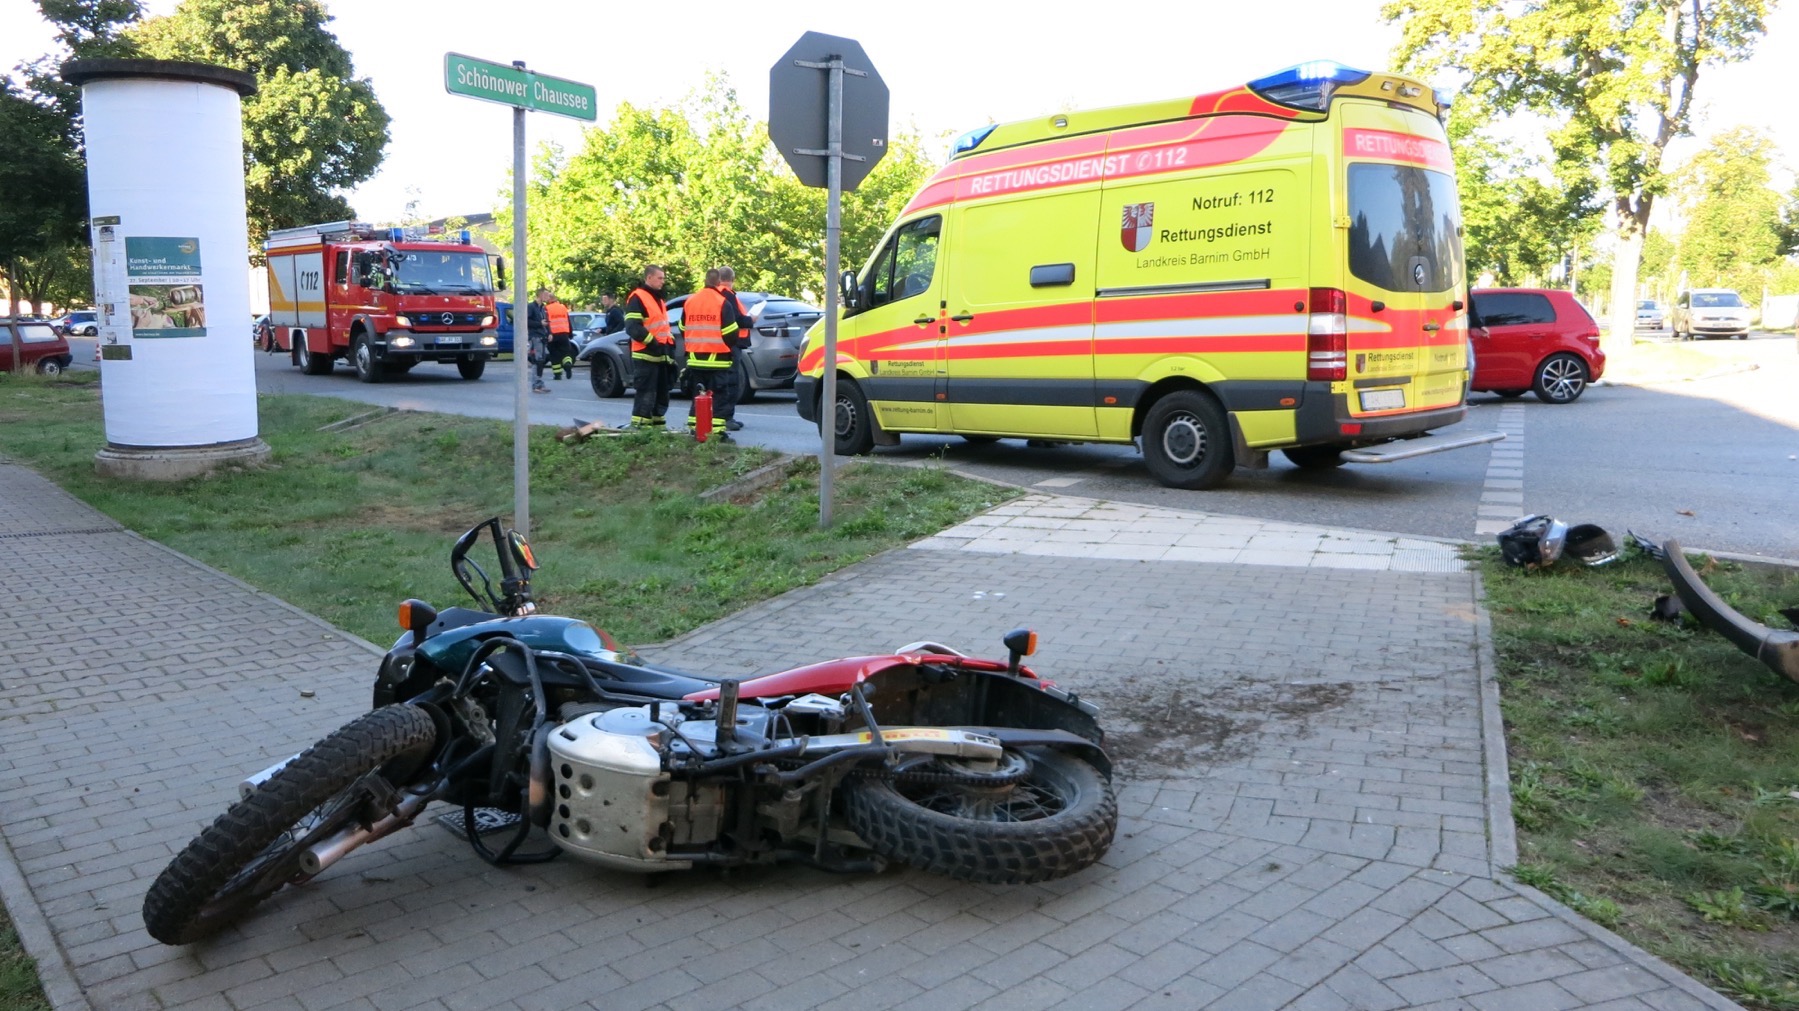 Bernau: Bernau: Schwerer Unfall zwischen Mottorrad und PKW Zu einem Zusammenstoß zwischen einem Pkw und einem Motorrad kam es am Mittwochmorgen gegen 08.30 Uhr auf der Schönower Chaussee.